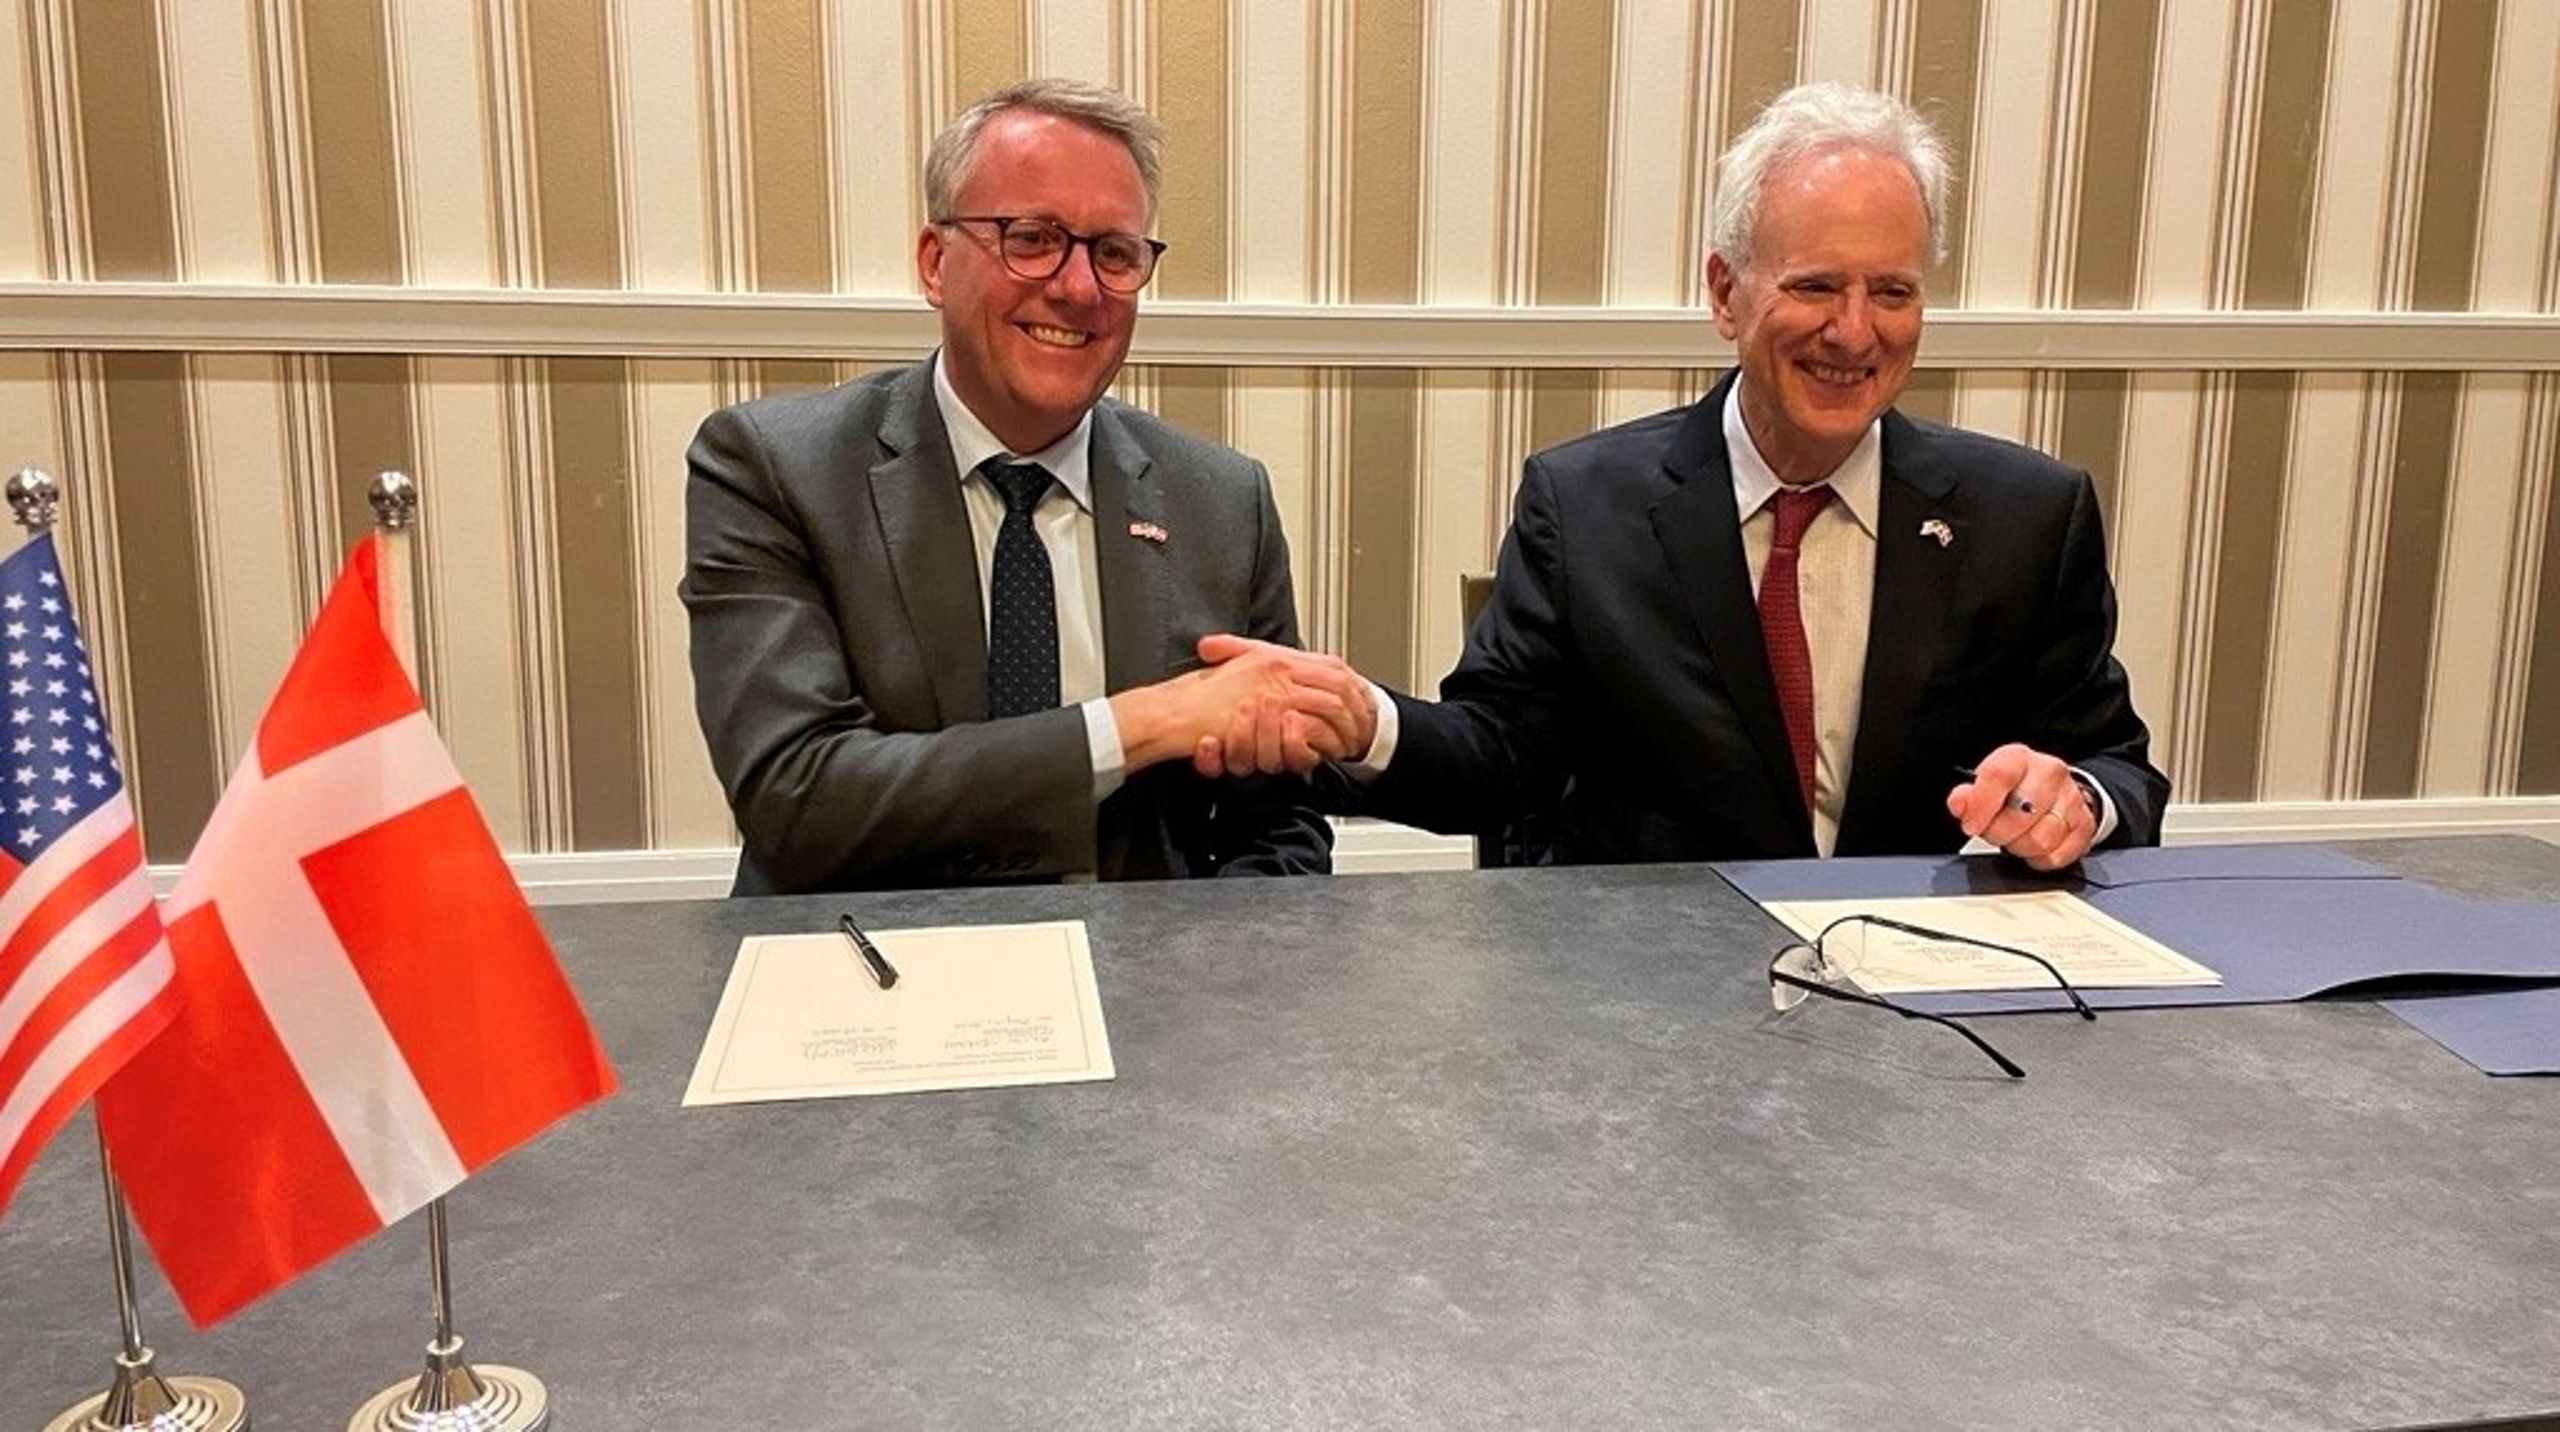 Erhvervsminister Morten Bødskov (S) underskriver erklæringen om grønt samarbejde mellem Danmark og USA med den amerikanske ambassadør i Danmark, Alan Leventhal.